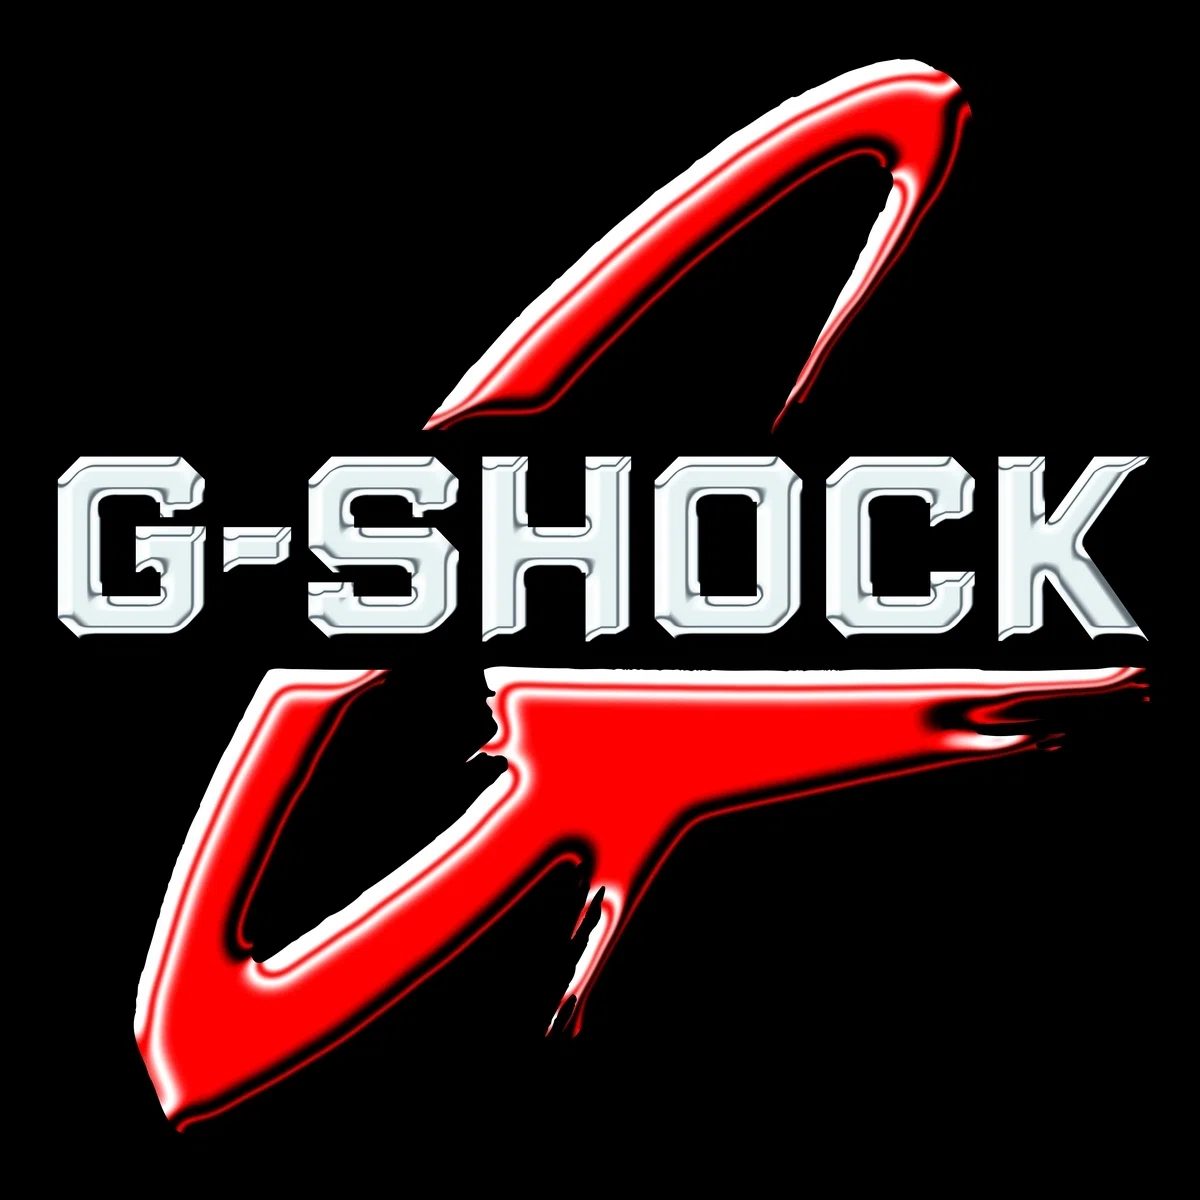 casio g shock promo code